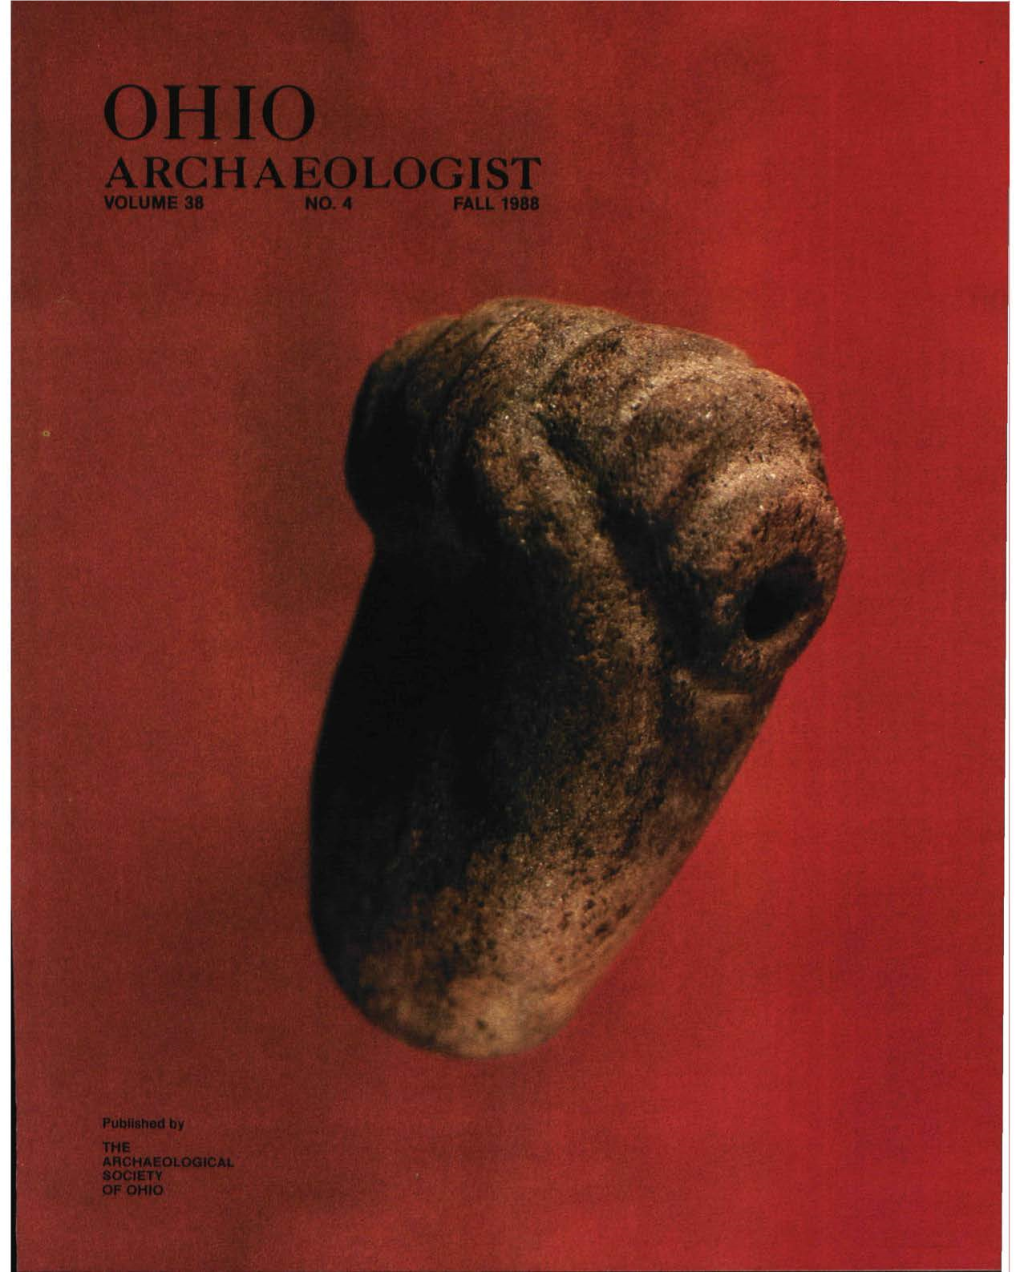 Ohio Archaeologist Volume 38 No